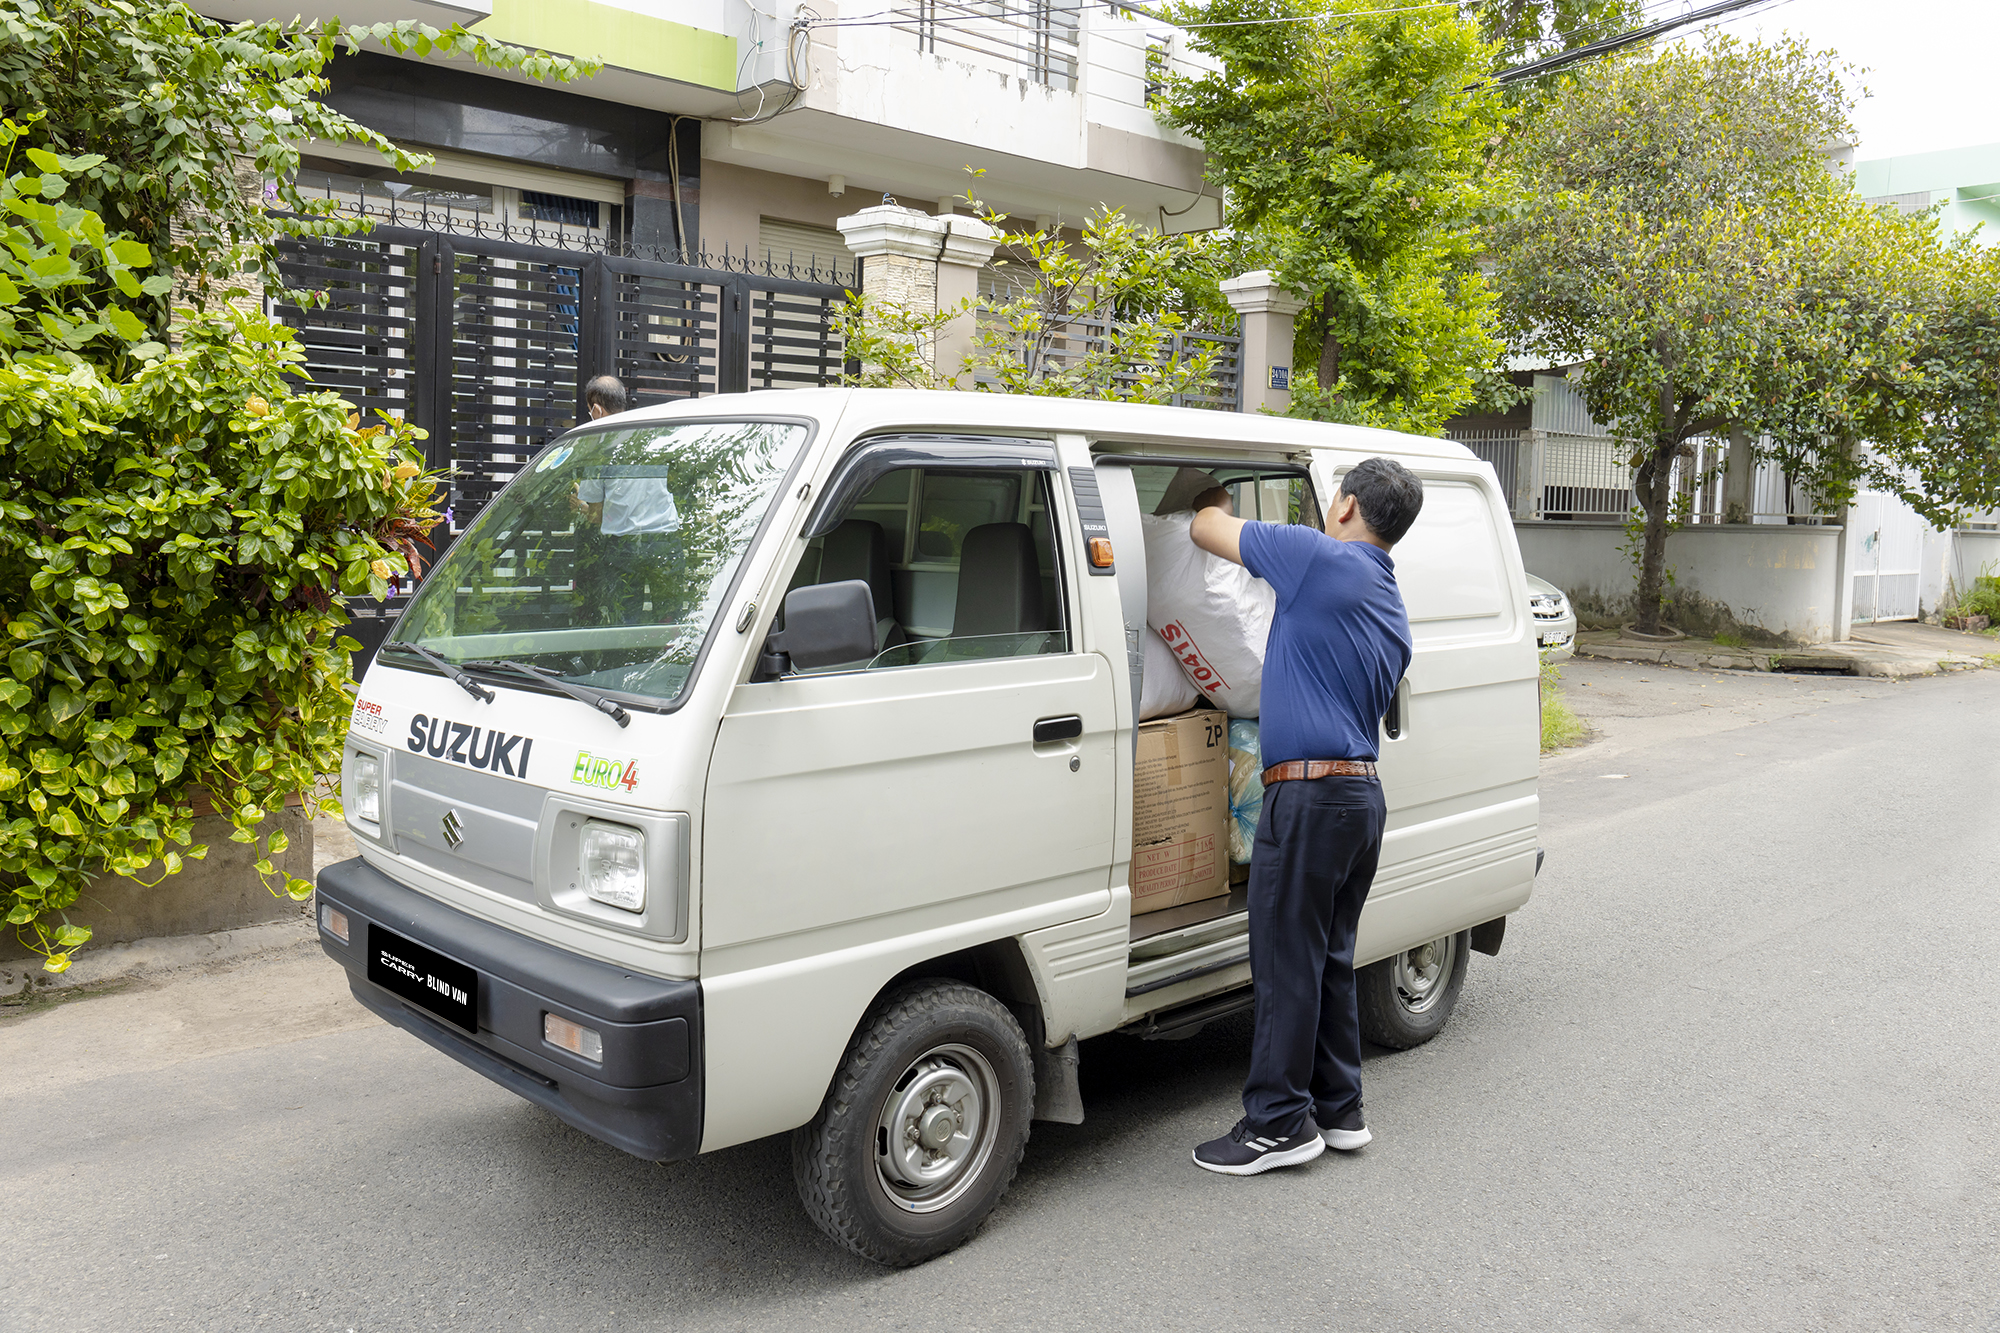 Chọn tải nhẹ Suzuki - Bí quyết tăng lợi nhuận cho người kinh doanh vận tải mùa cuối năm - Ảnh 2.